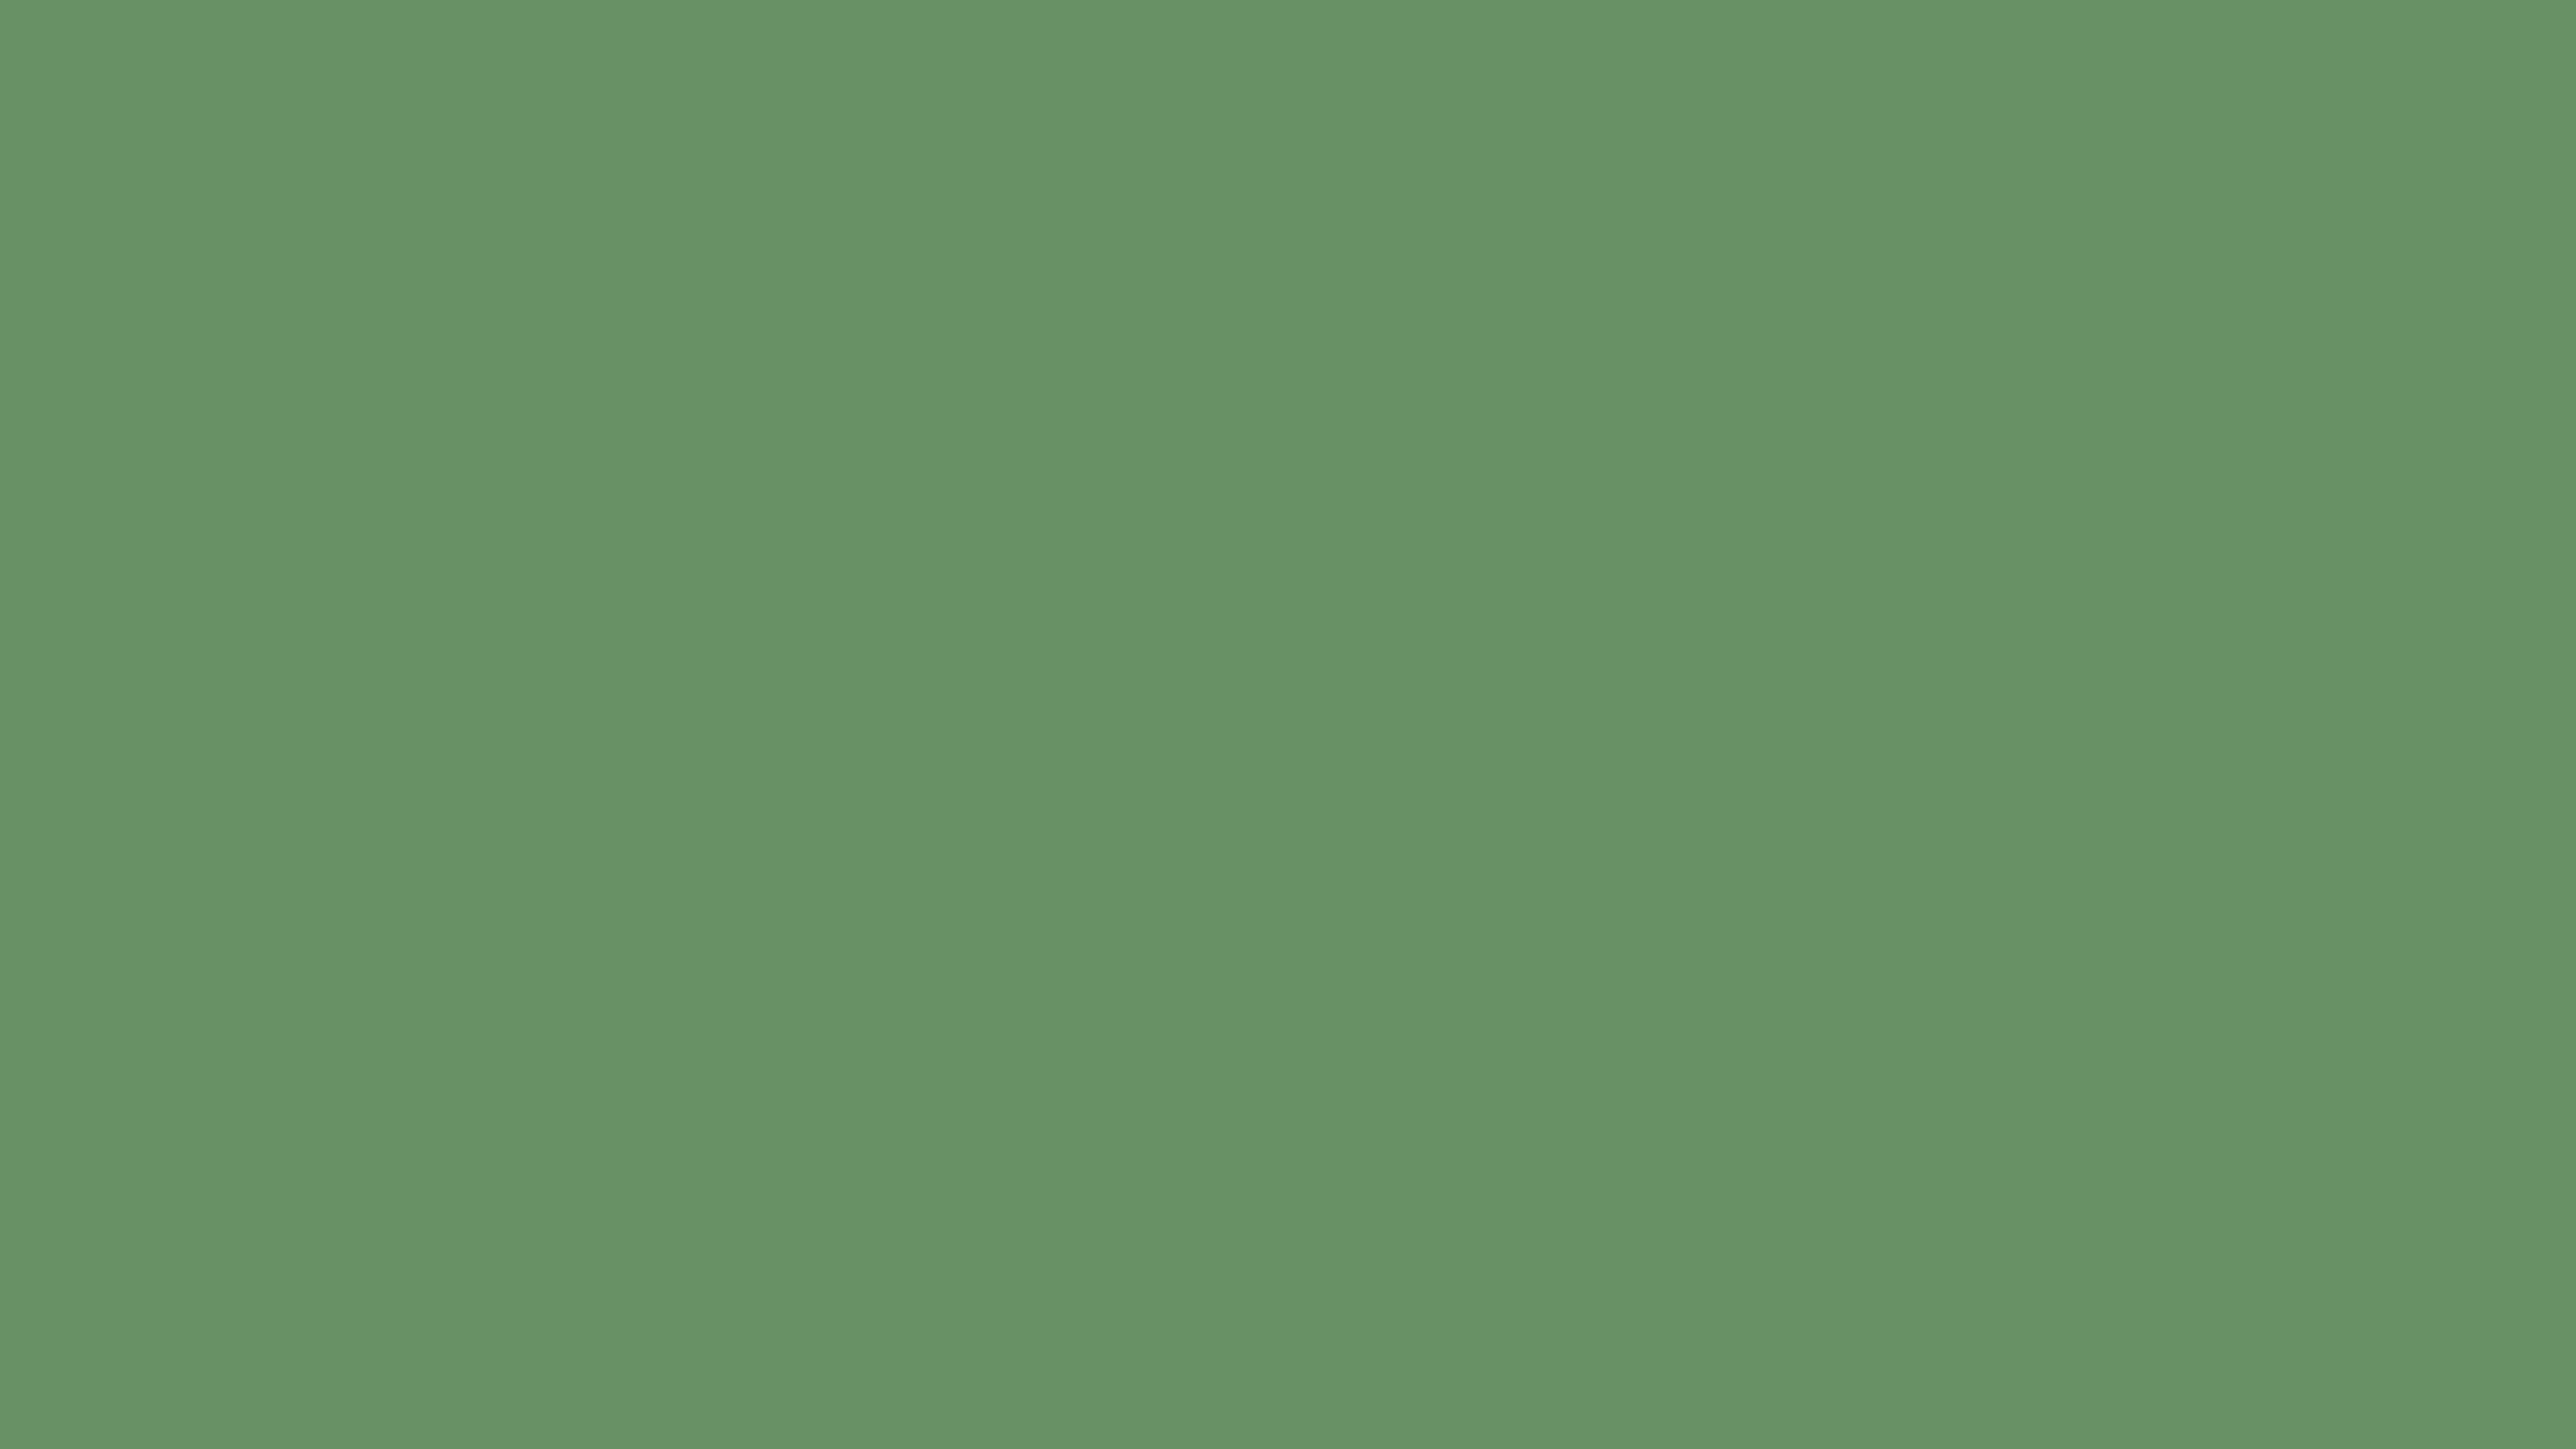 Russian Green Solid Color: Hãy khám phá những bức tranh với màu xanh lục đậm đà và sắc nét trên nền nền Russian Green Solid Color. Sự tươi tắn của màu xanh này sẽ mang lại cho bạn sự bình tĩnh và thư thái khi ngắm nhìn.